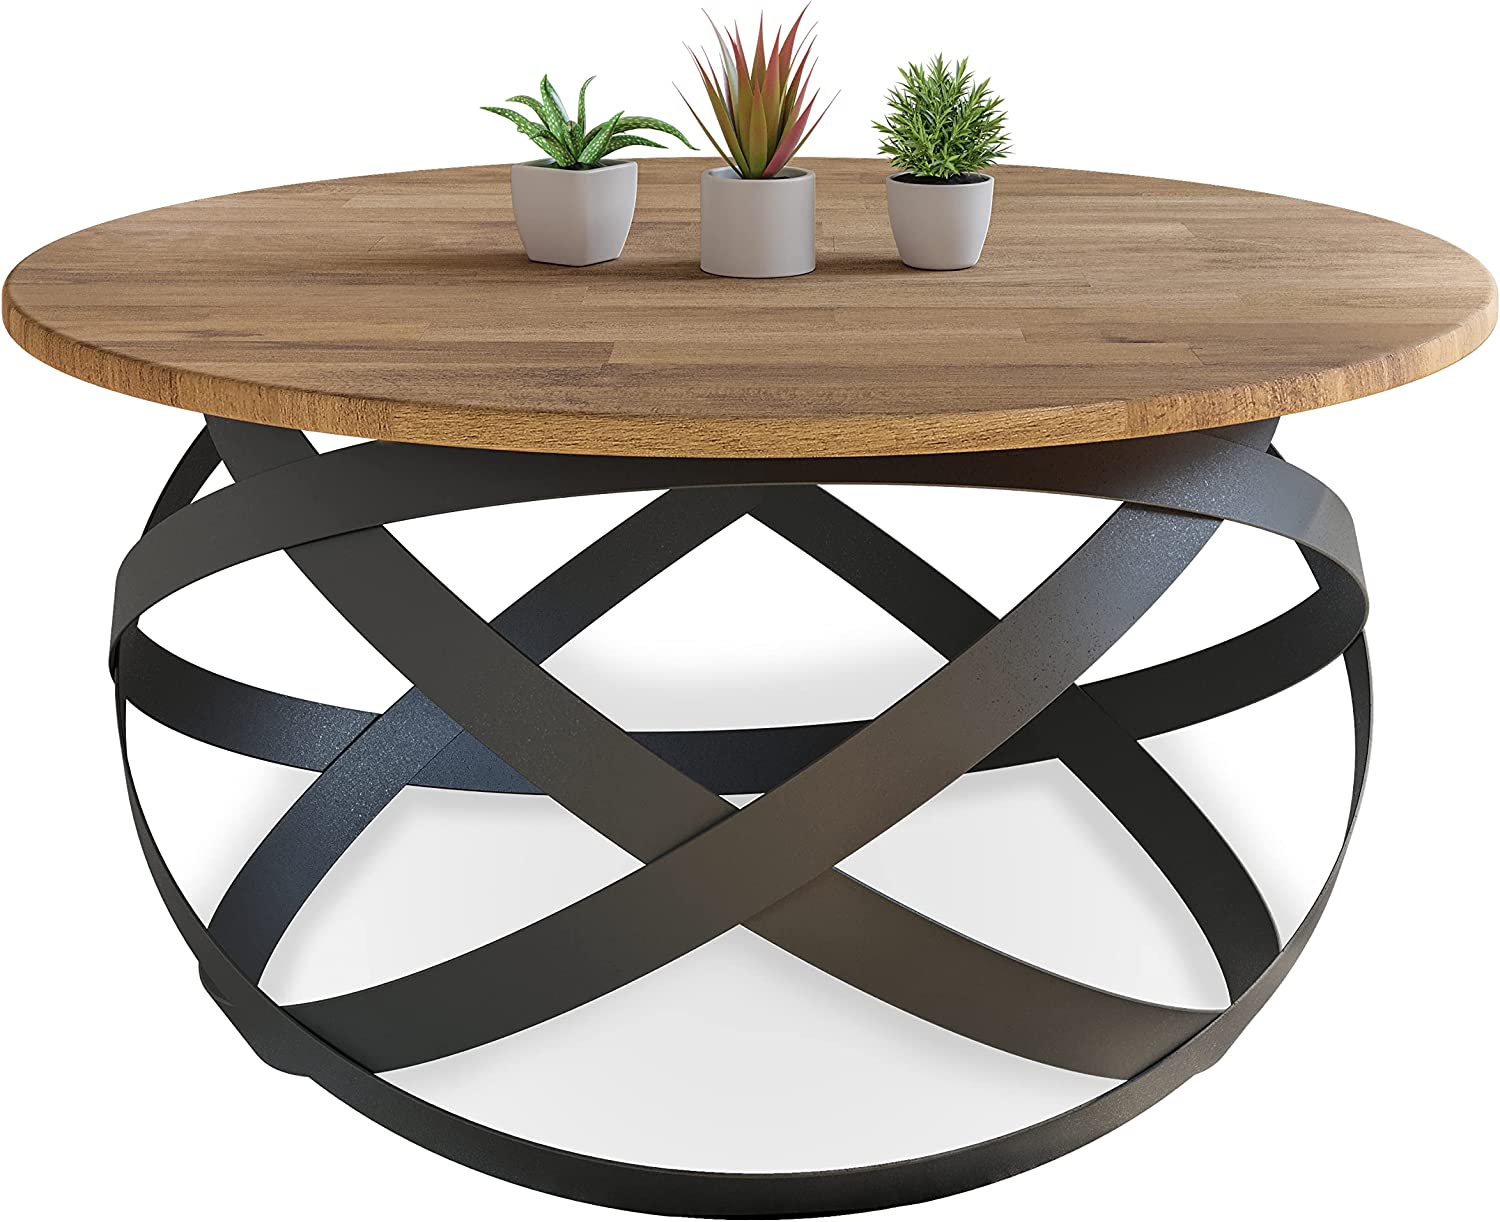 Table basse ronde faites à la main en bois de hêtre massif, style minimaliste moderne Lumarc Firenze